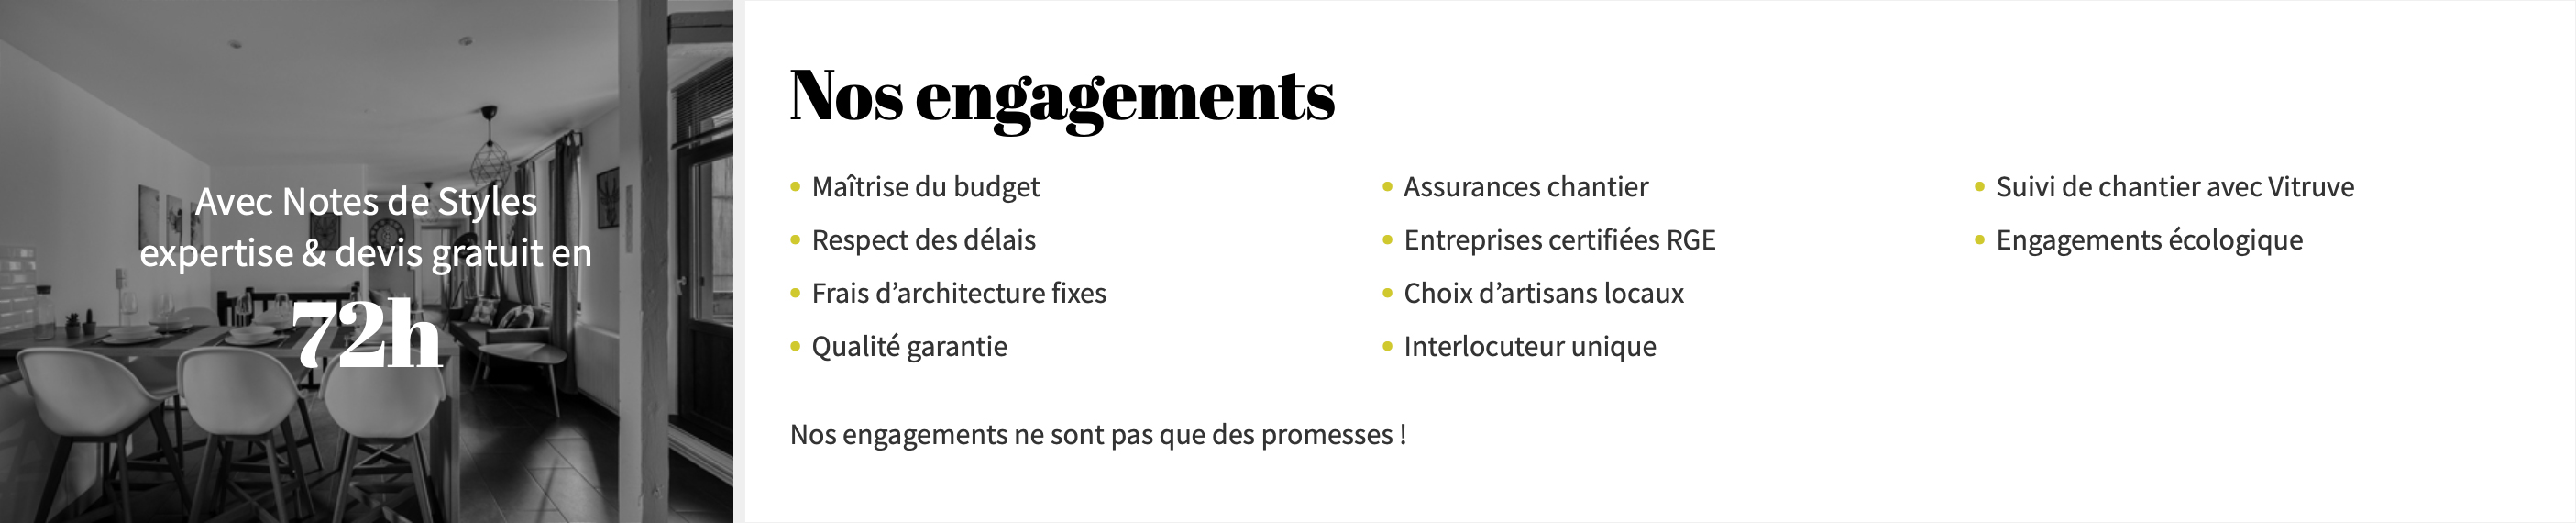 Notes de Styles Saint Brieuc - Nos engagements